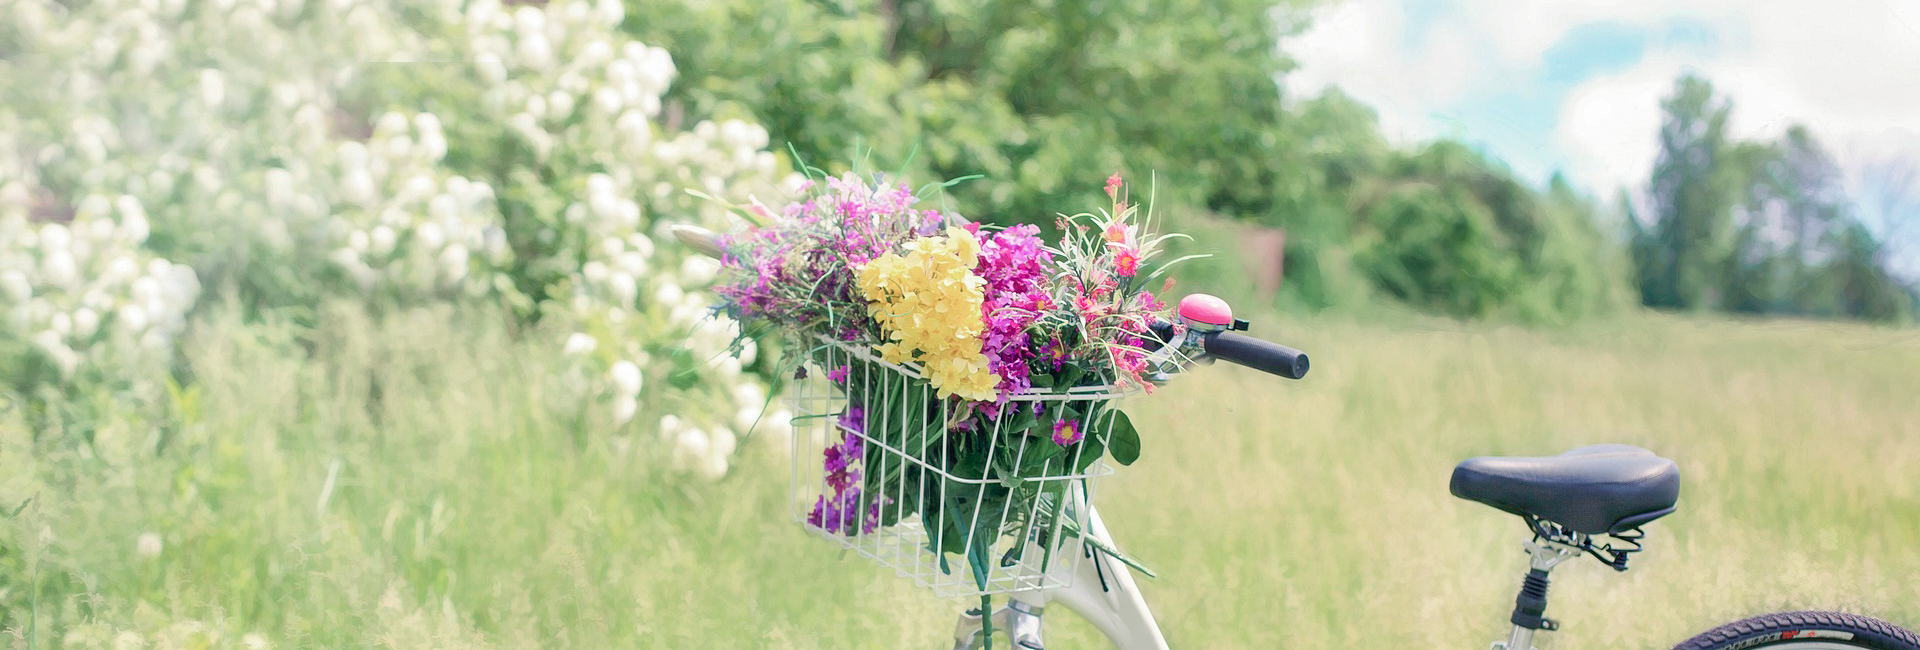 カゴに花を積んだ自転車が走っている写真